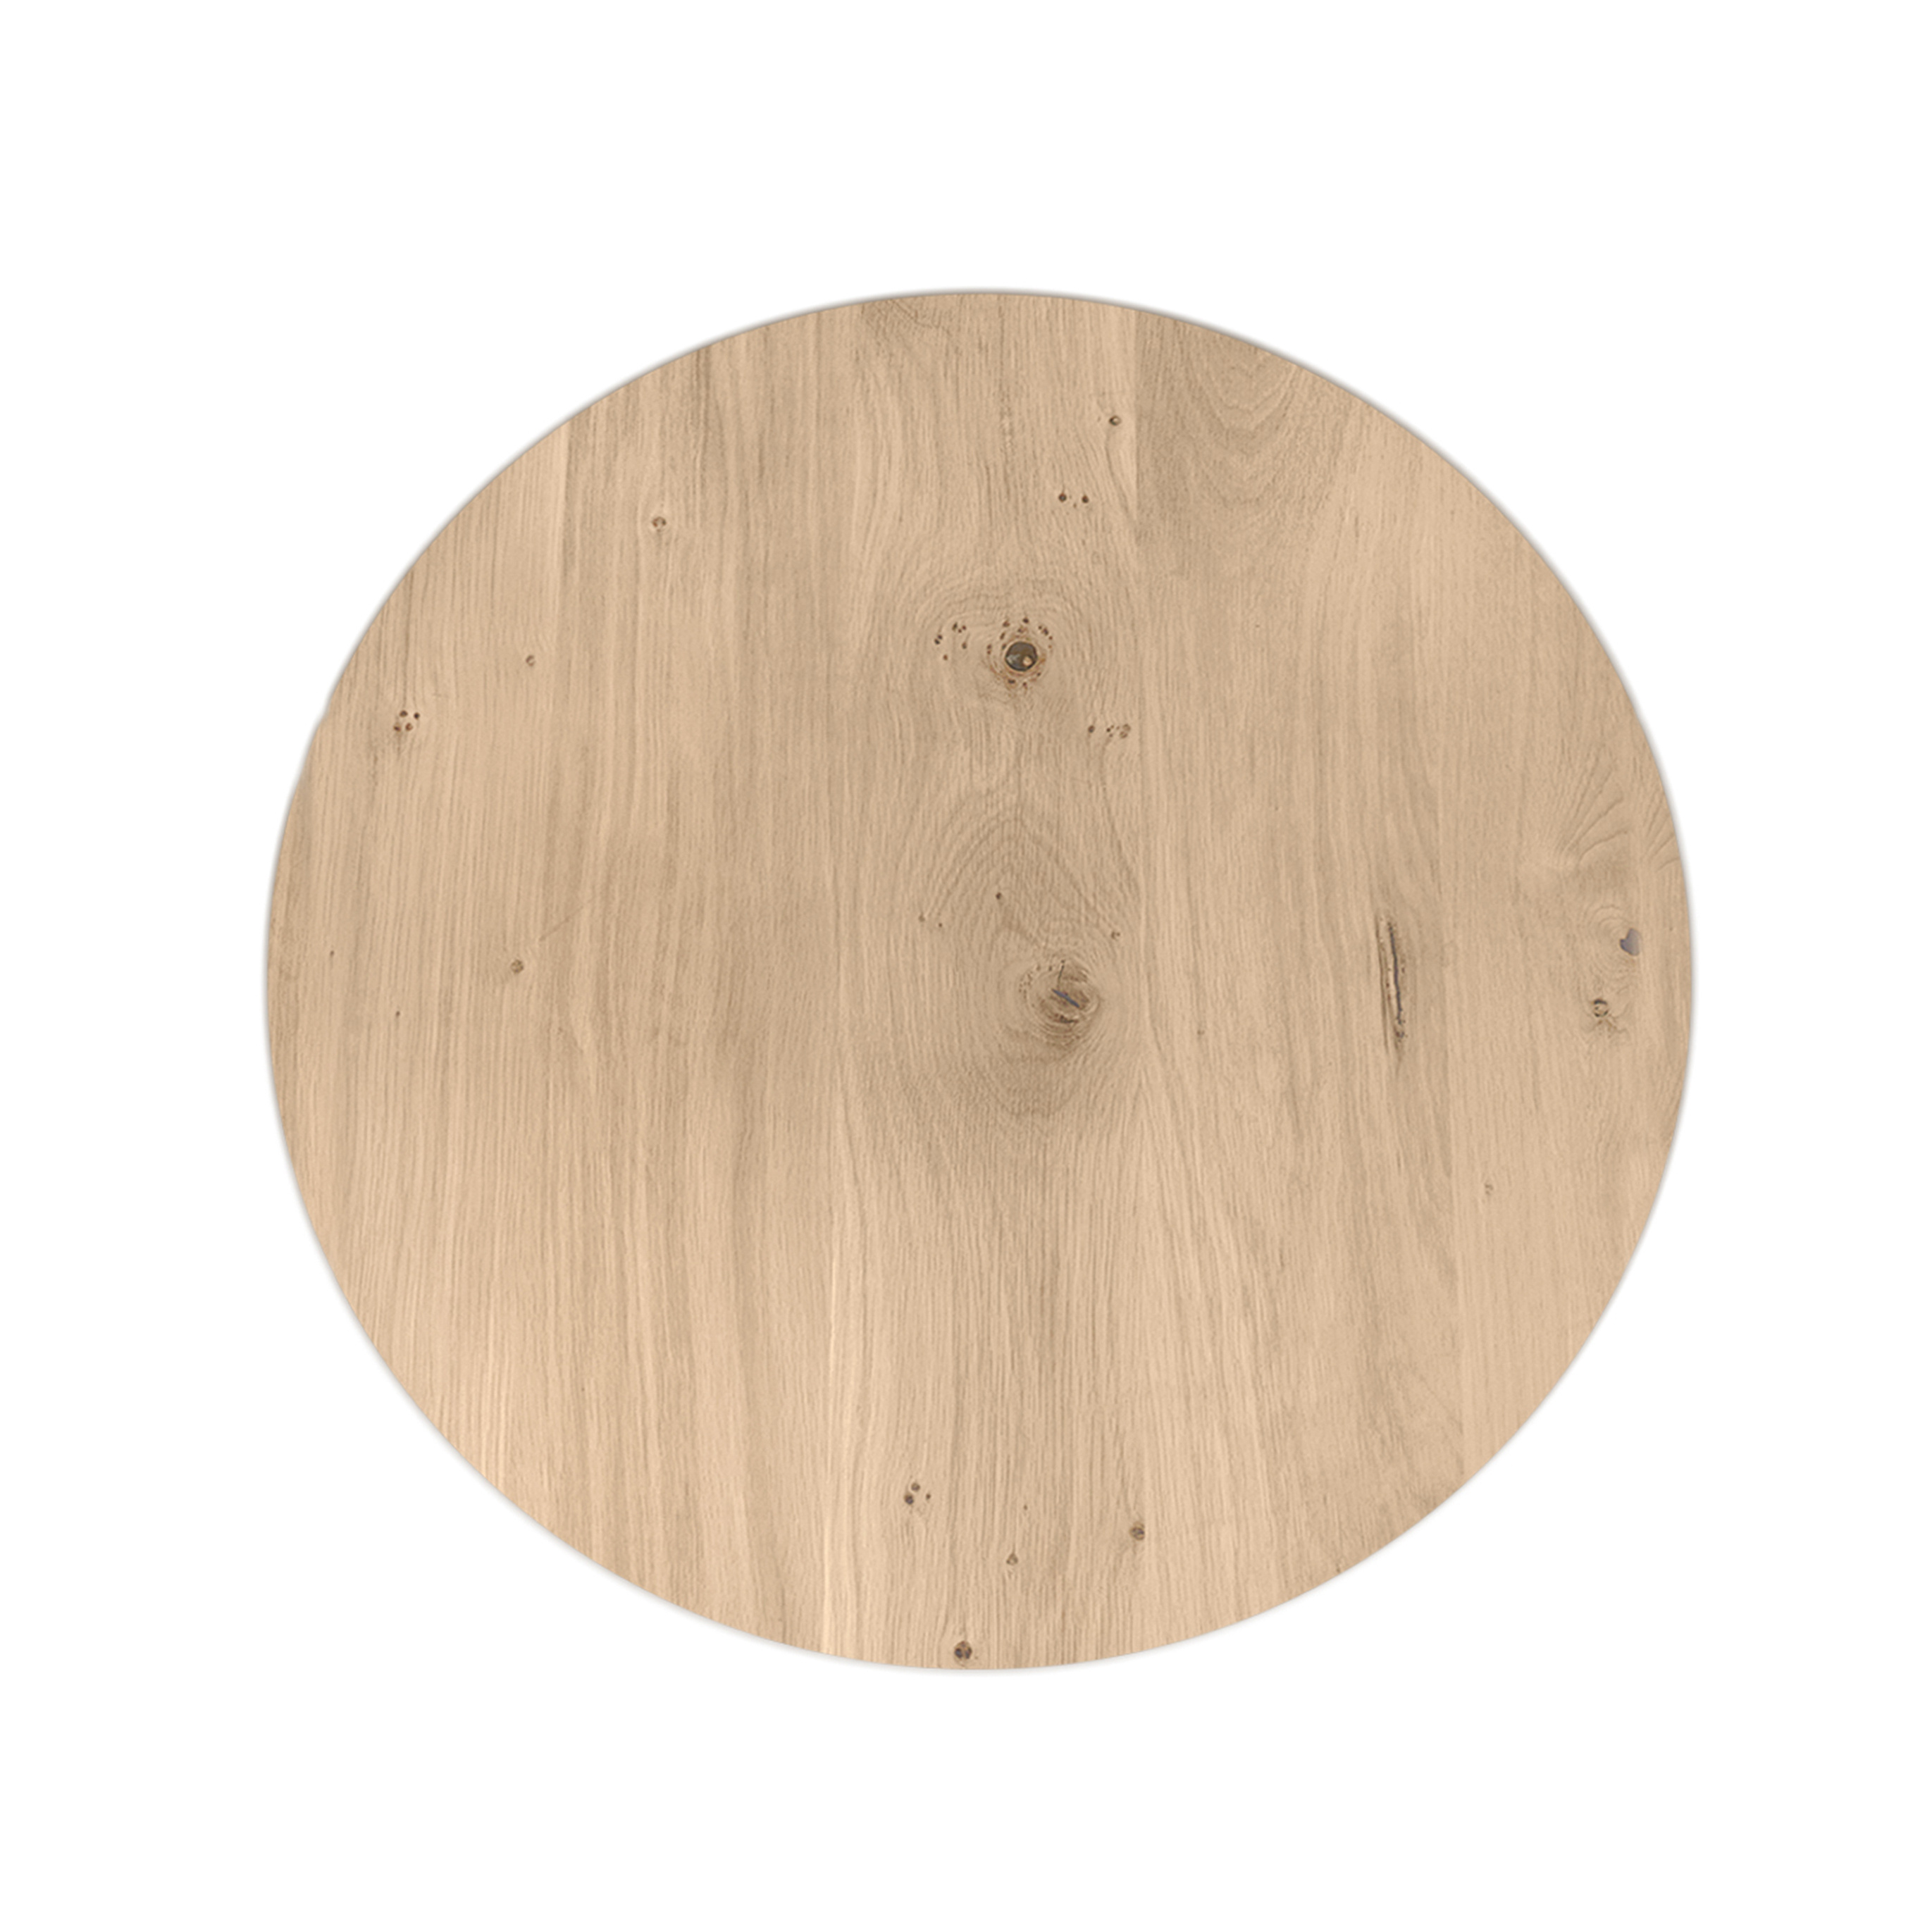  Eiken tafelblad rond - 4 cm dik (1-laag) - Diverse afmetingen - optioneel geborsteld - extra rustiek Europees eikenhout - met extra brede lamellen (circa 14-20 cm) - verlijmd kd 10-12%